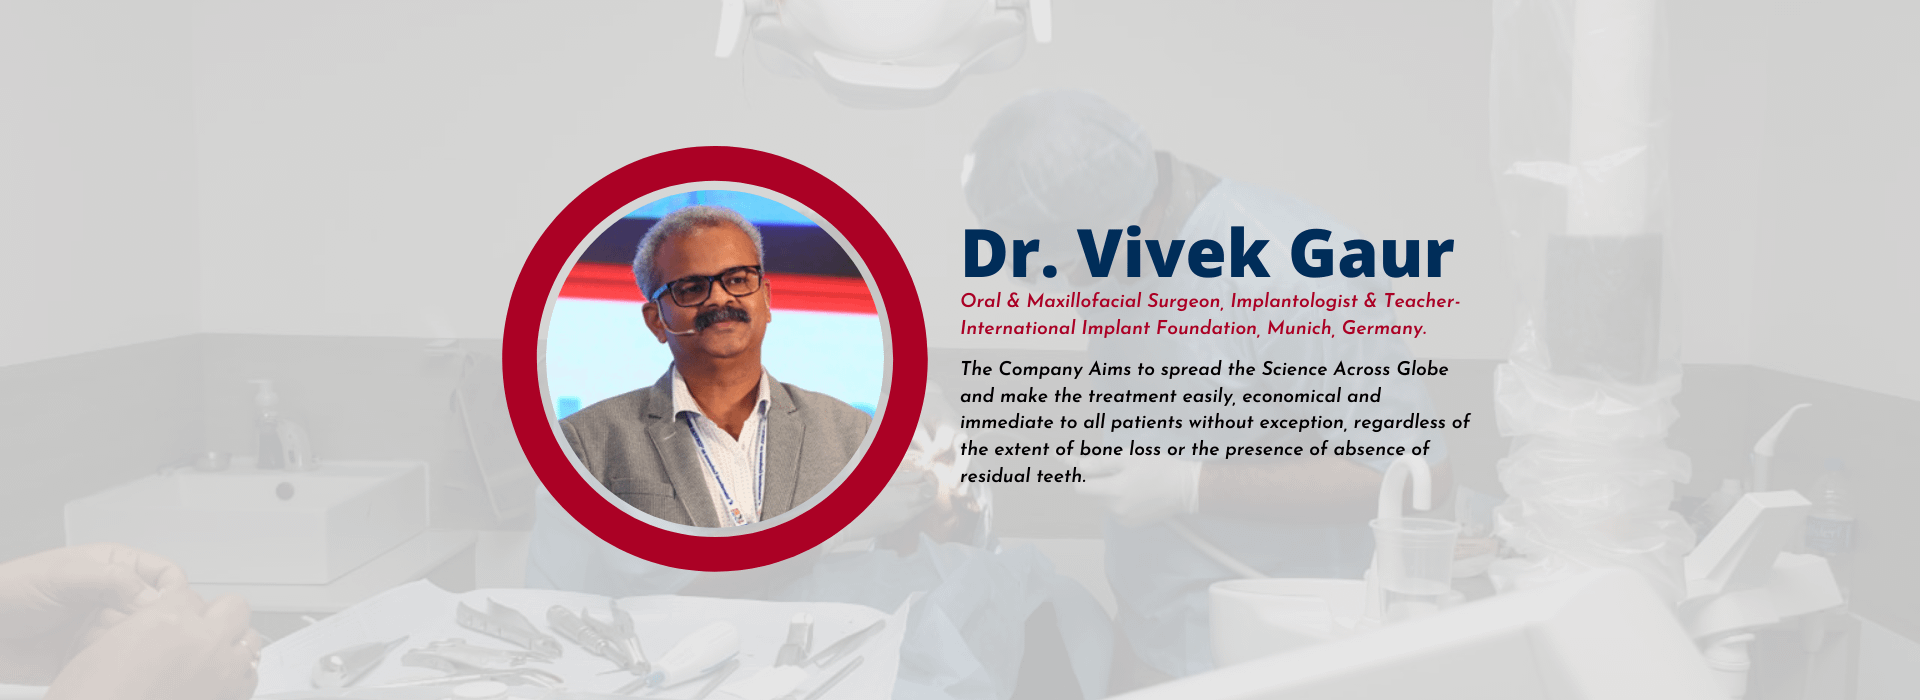 Dr. Vivek Gaur @ Simpladent Clinics - Single piece implants with Retrievability | Basal Implants | #1 Dental Clinic